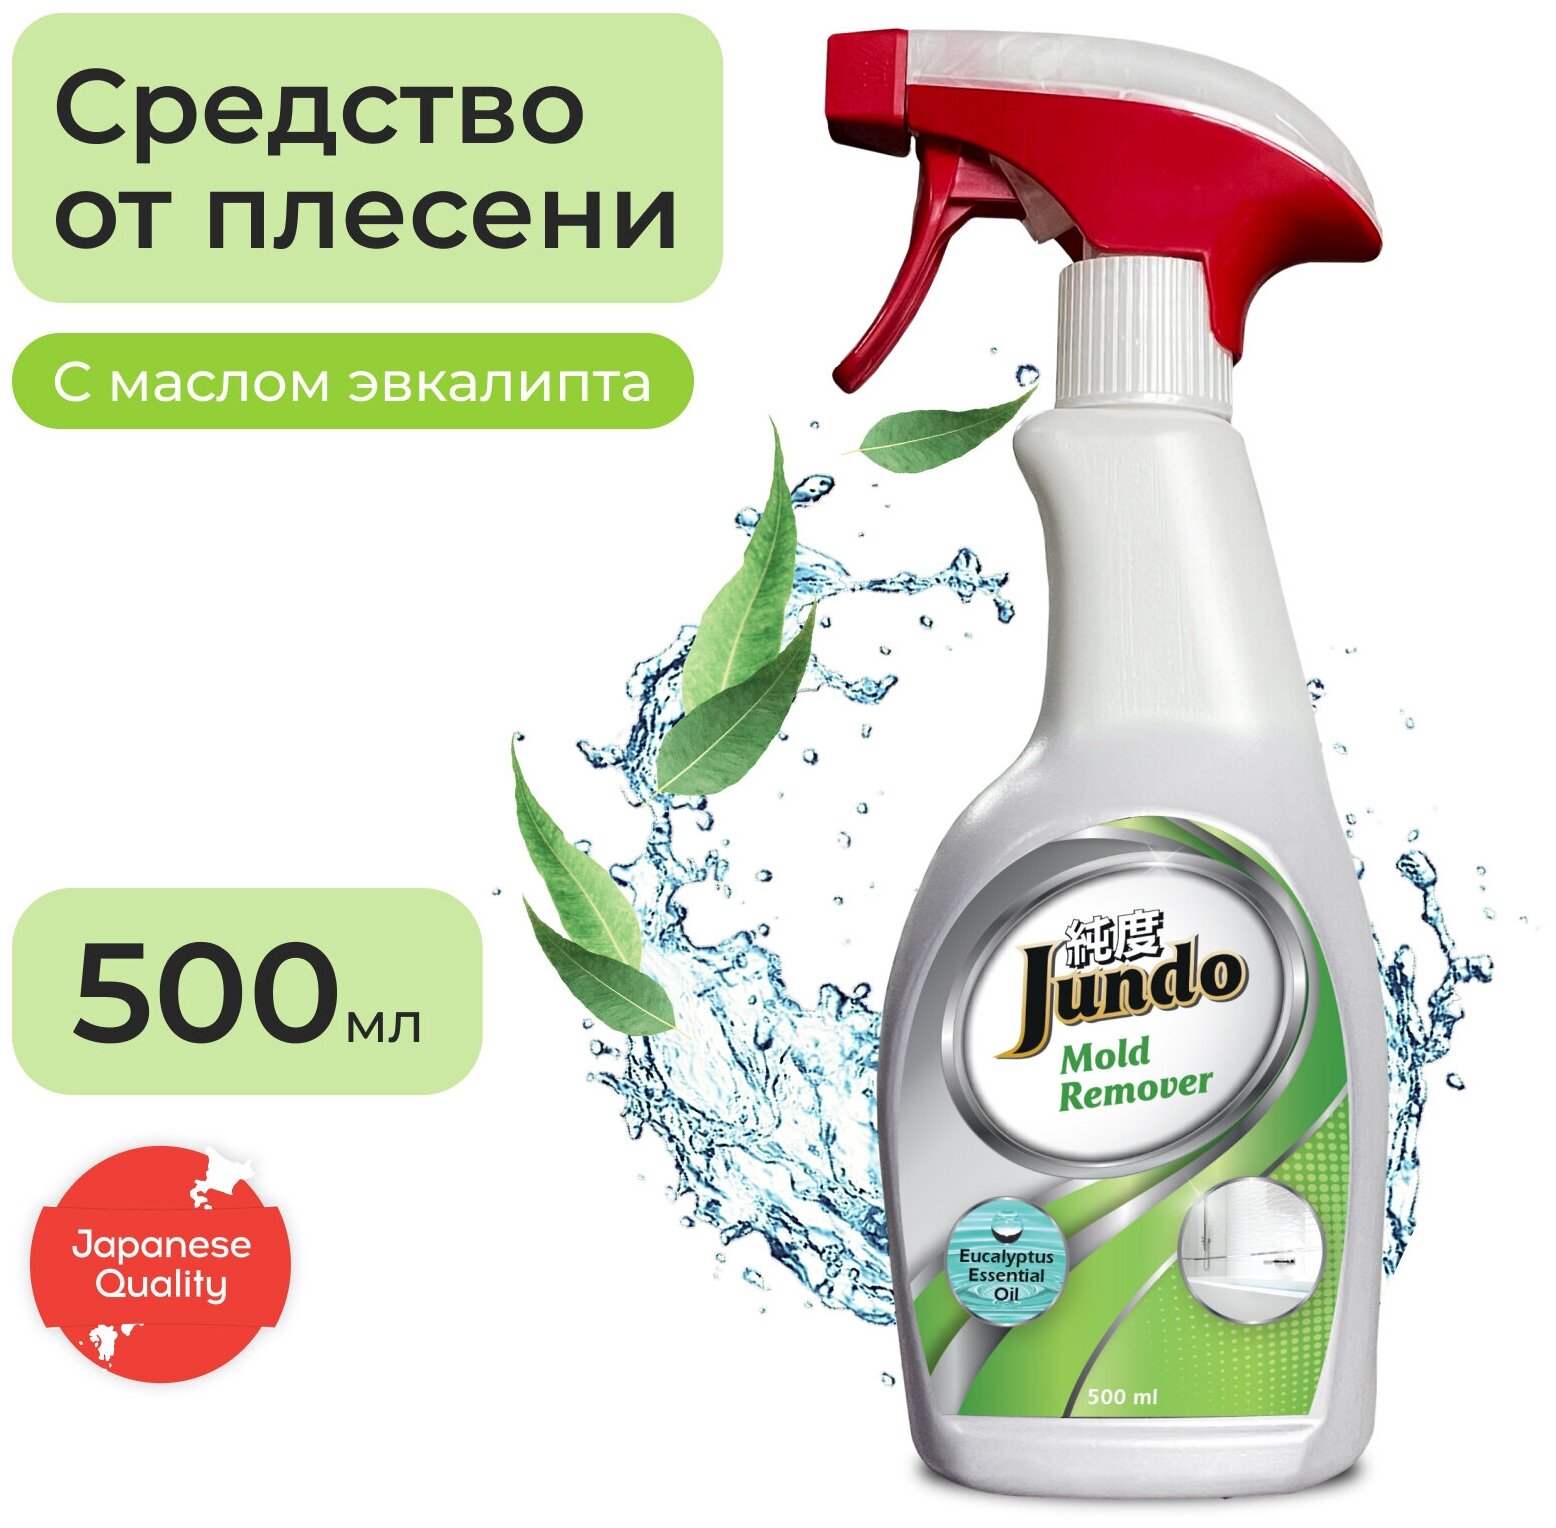 Jundo средство для удаления плесени и грибка Mold Remover, 0.5 л